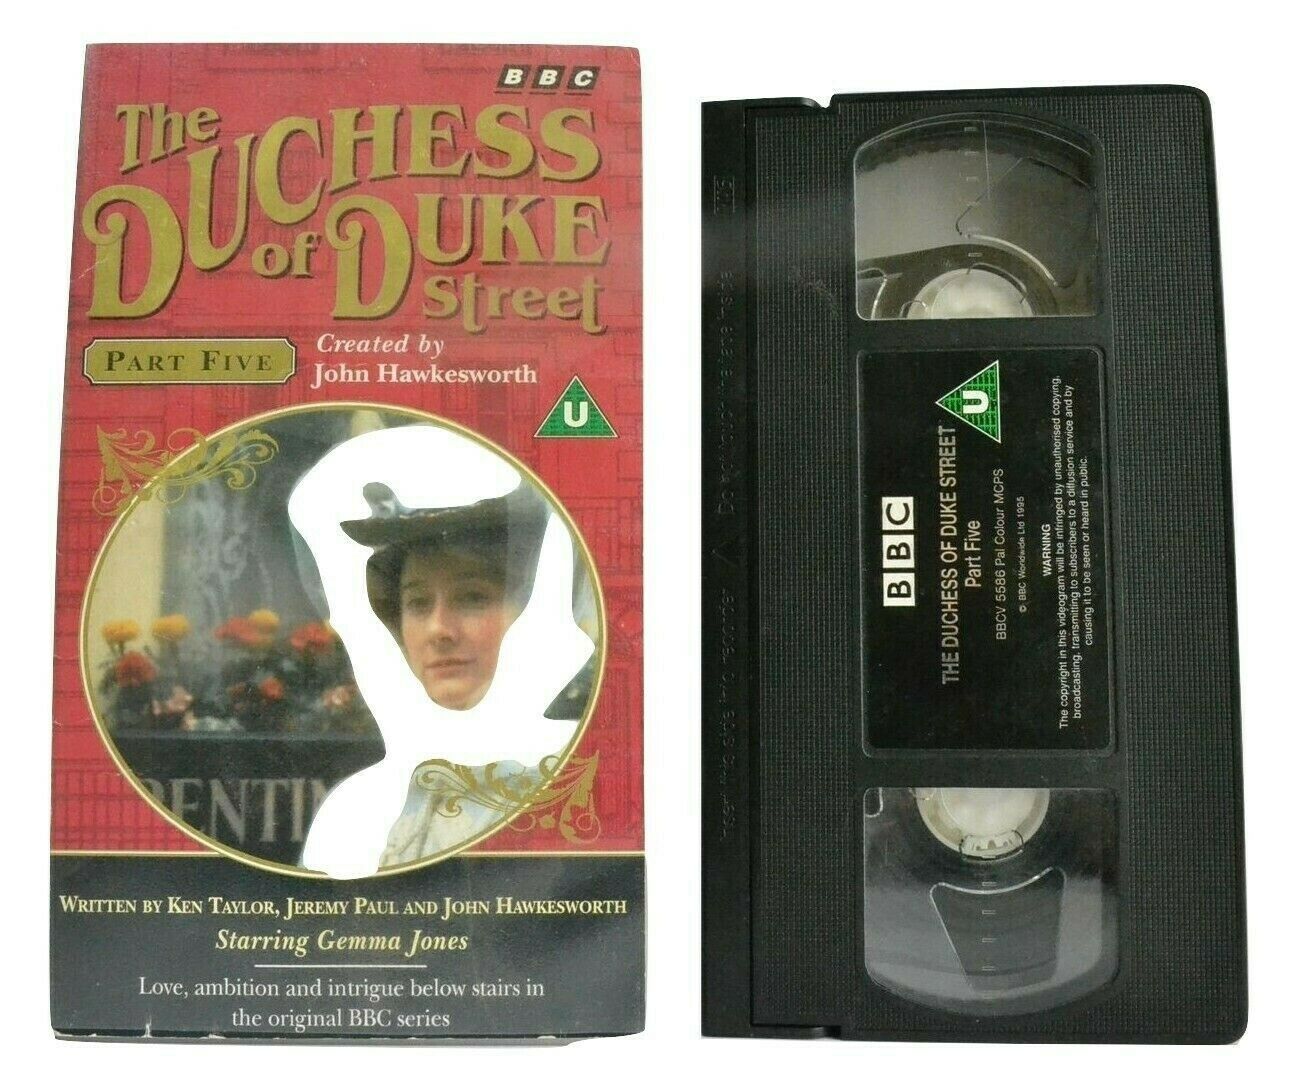 The Duchess Of Duke Street (Part 5) BBC T.V. Series - Drama - Gemma Jones - VHS-